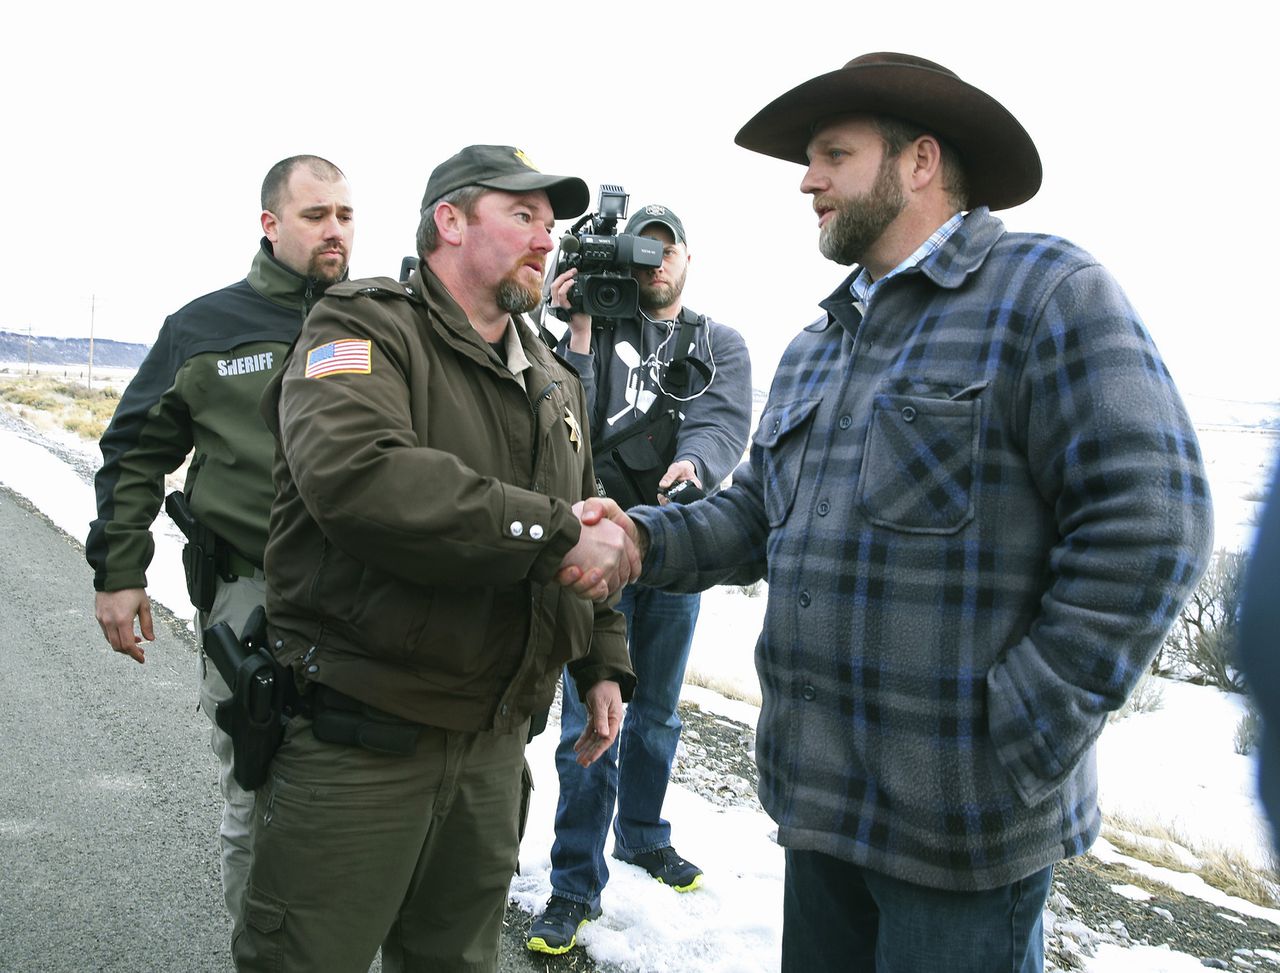 De plaatselijke sheriff ontmoet Ammon Bundy (rechts), een van de 'soevereine burgers' die sinds zaterdagavond een overheidsgebouw bezetten.